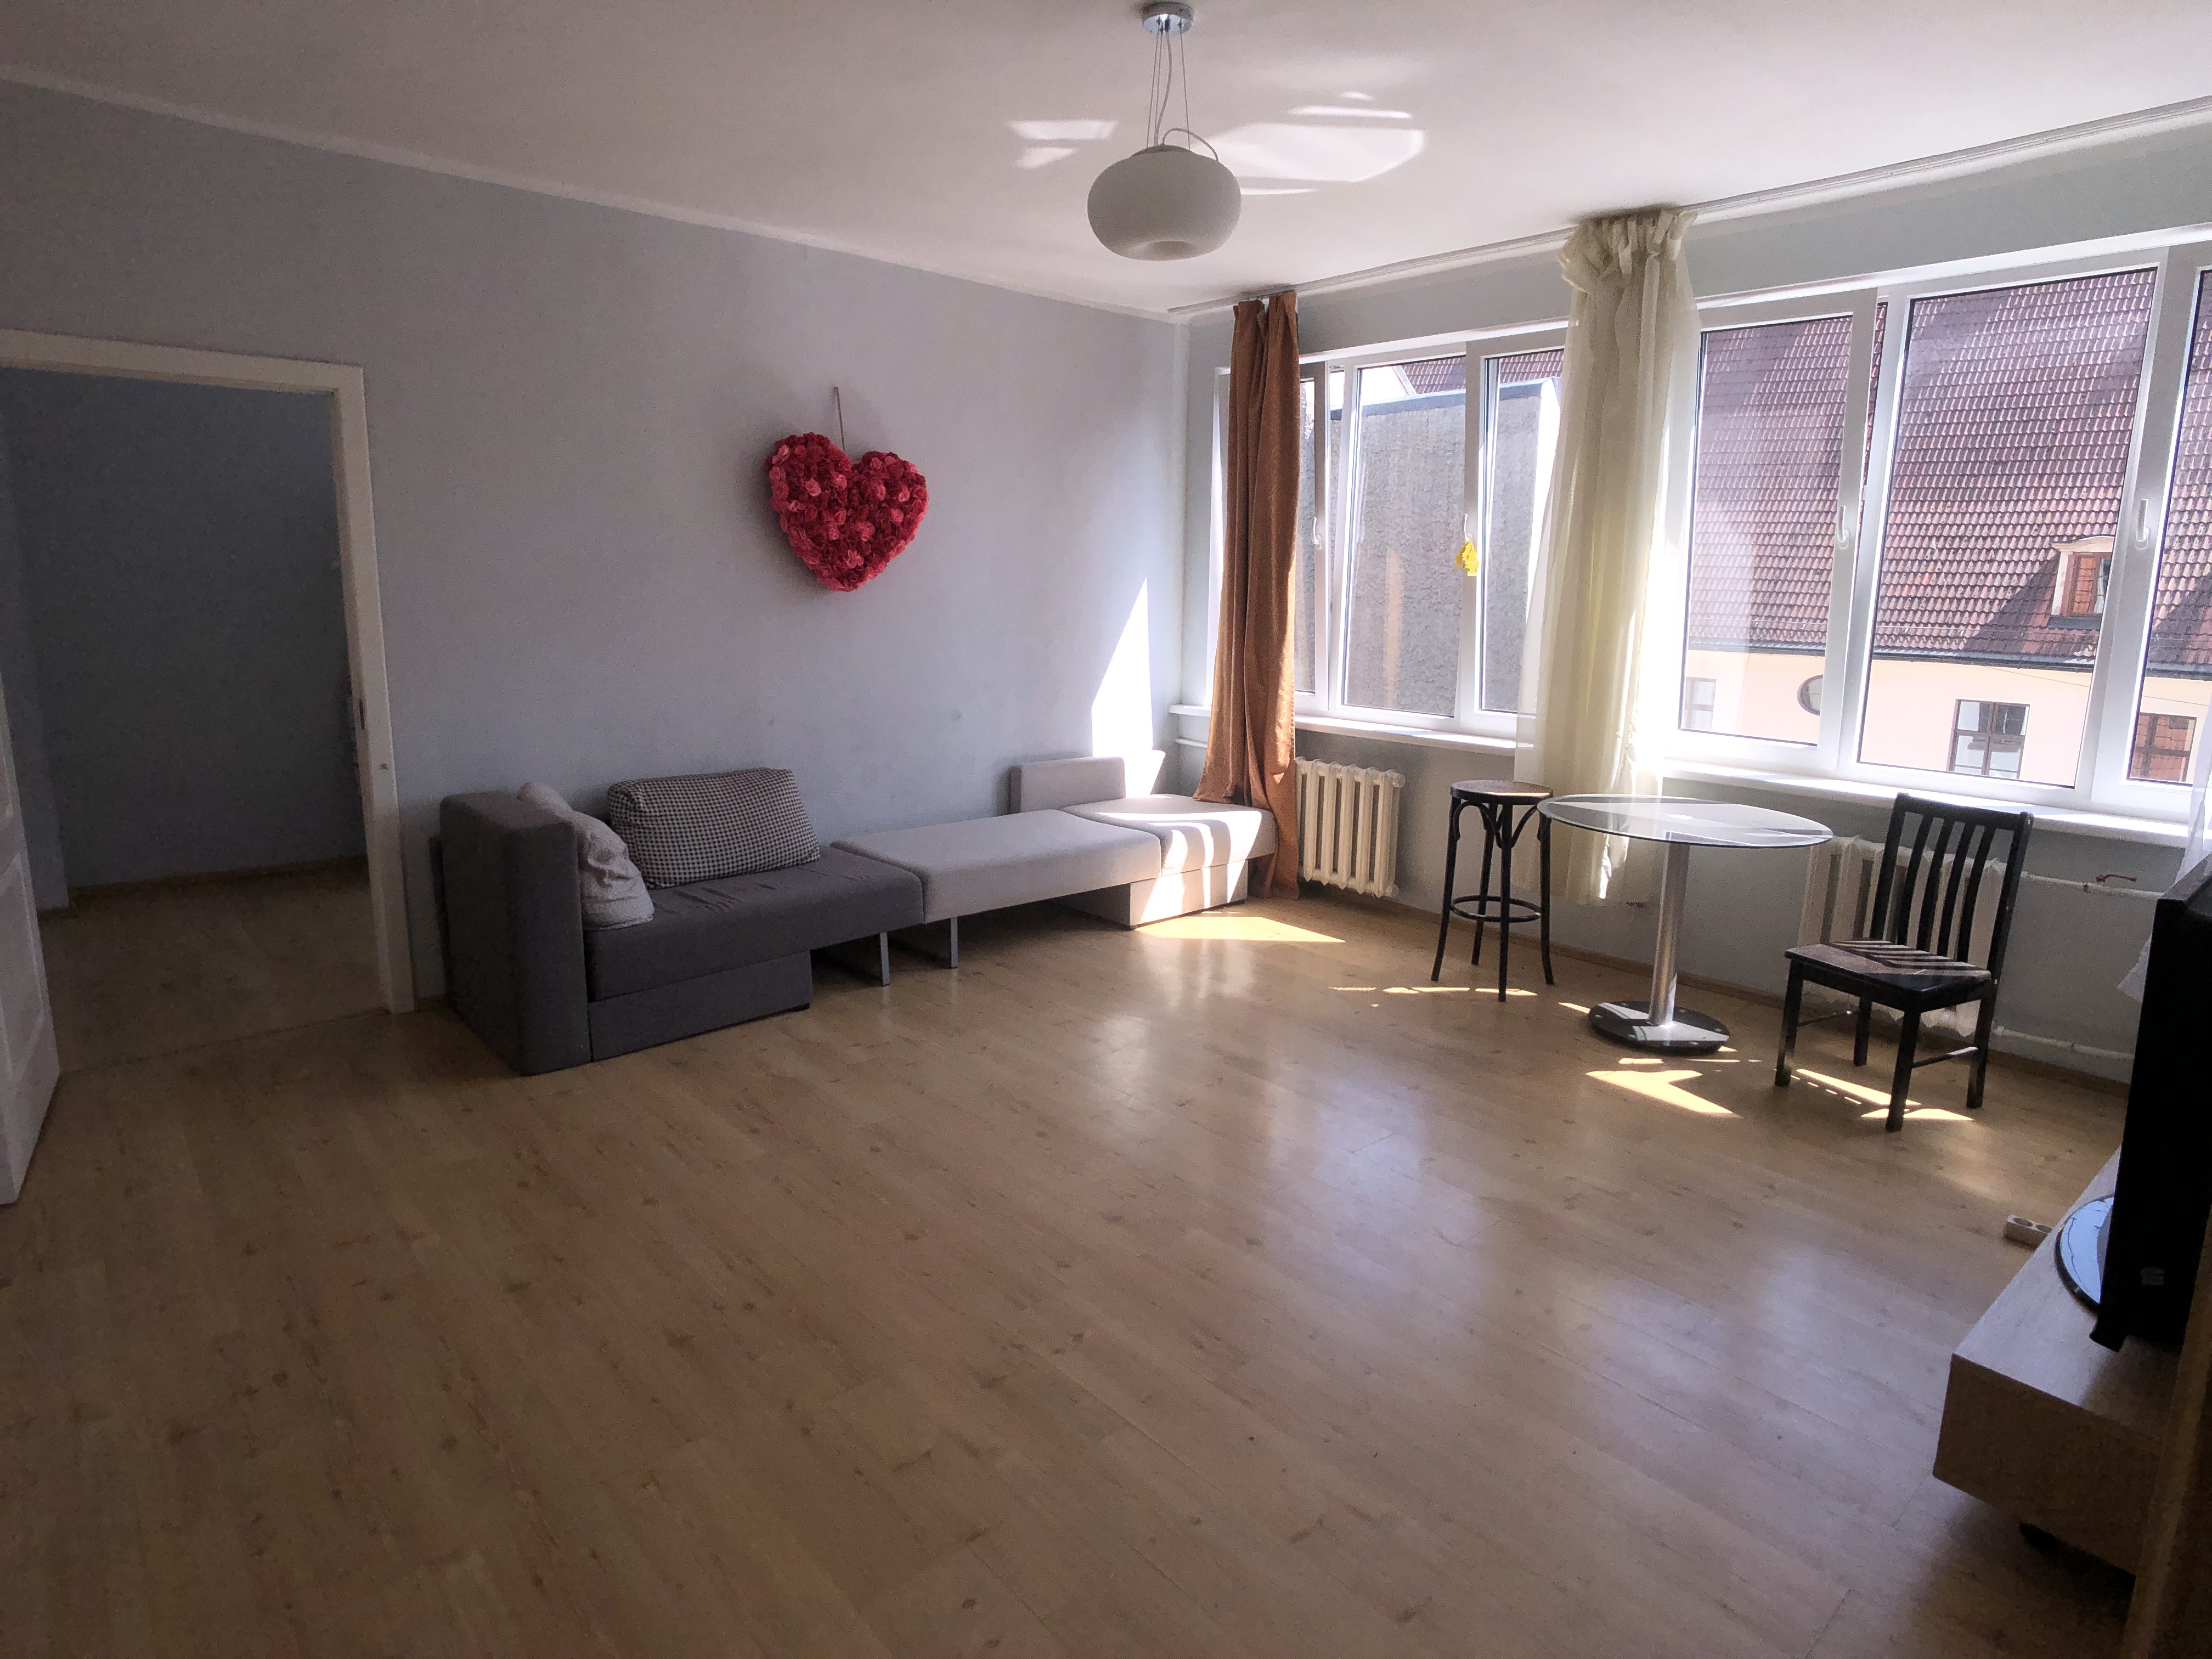 Apartment for rent, Peldu iela street 24 - Image 1